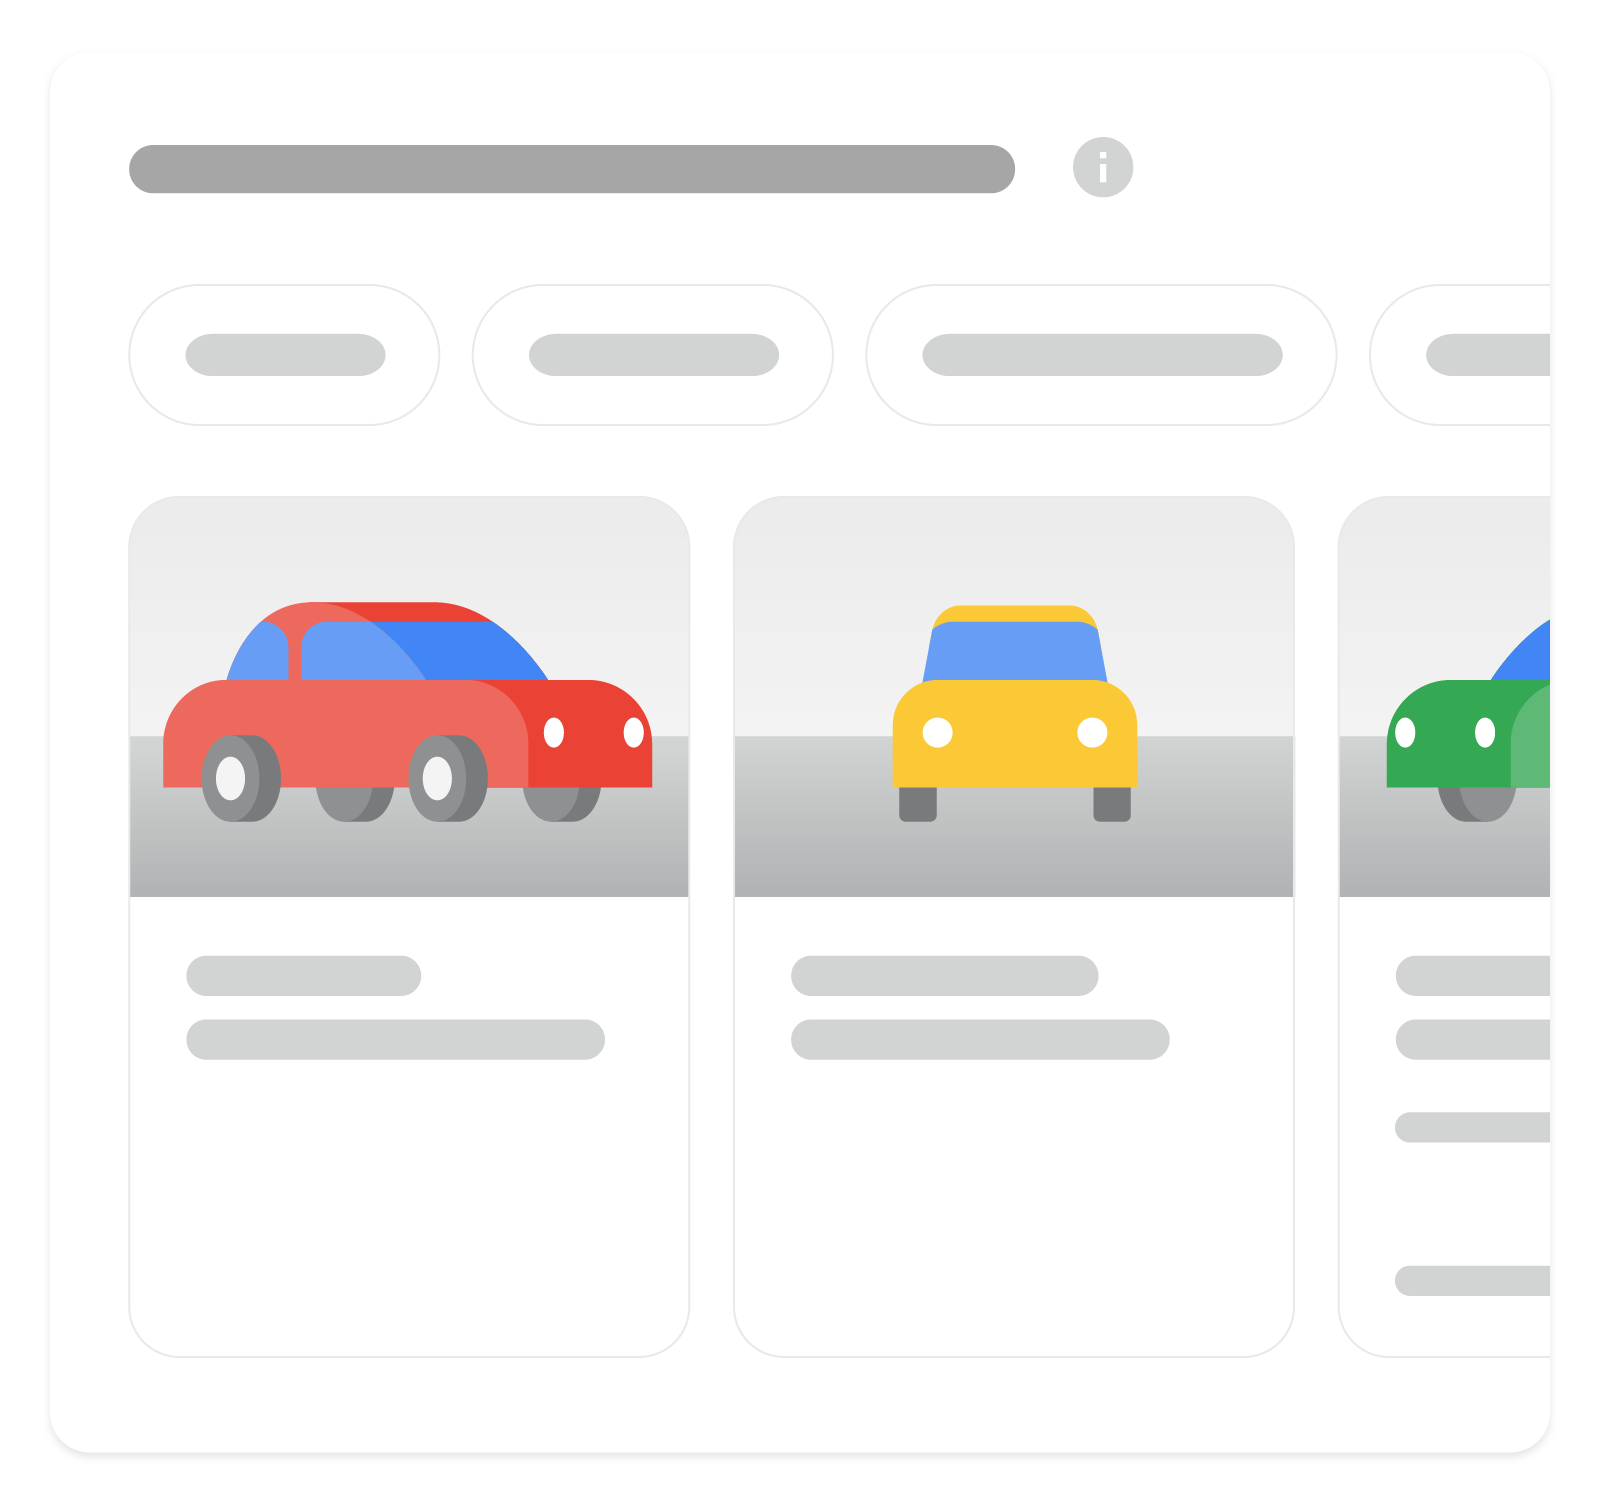 Hình ảnh cho thấy cách mà kết quả nhiều định dạng về trang thông tin xe có thể xuất hiện trên Google Tìm kiếm